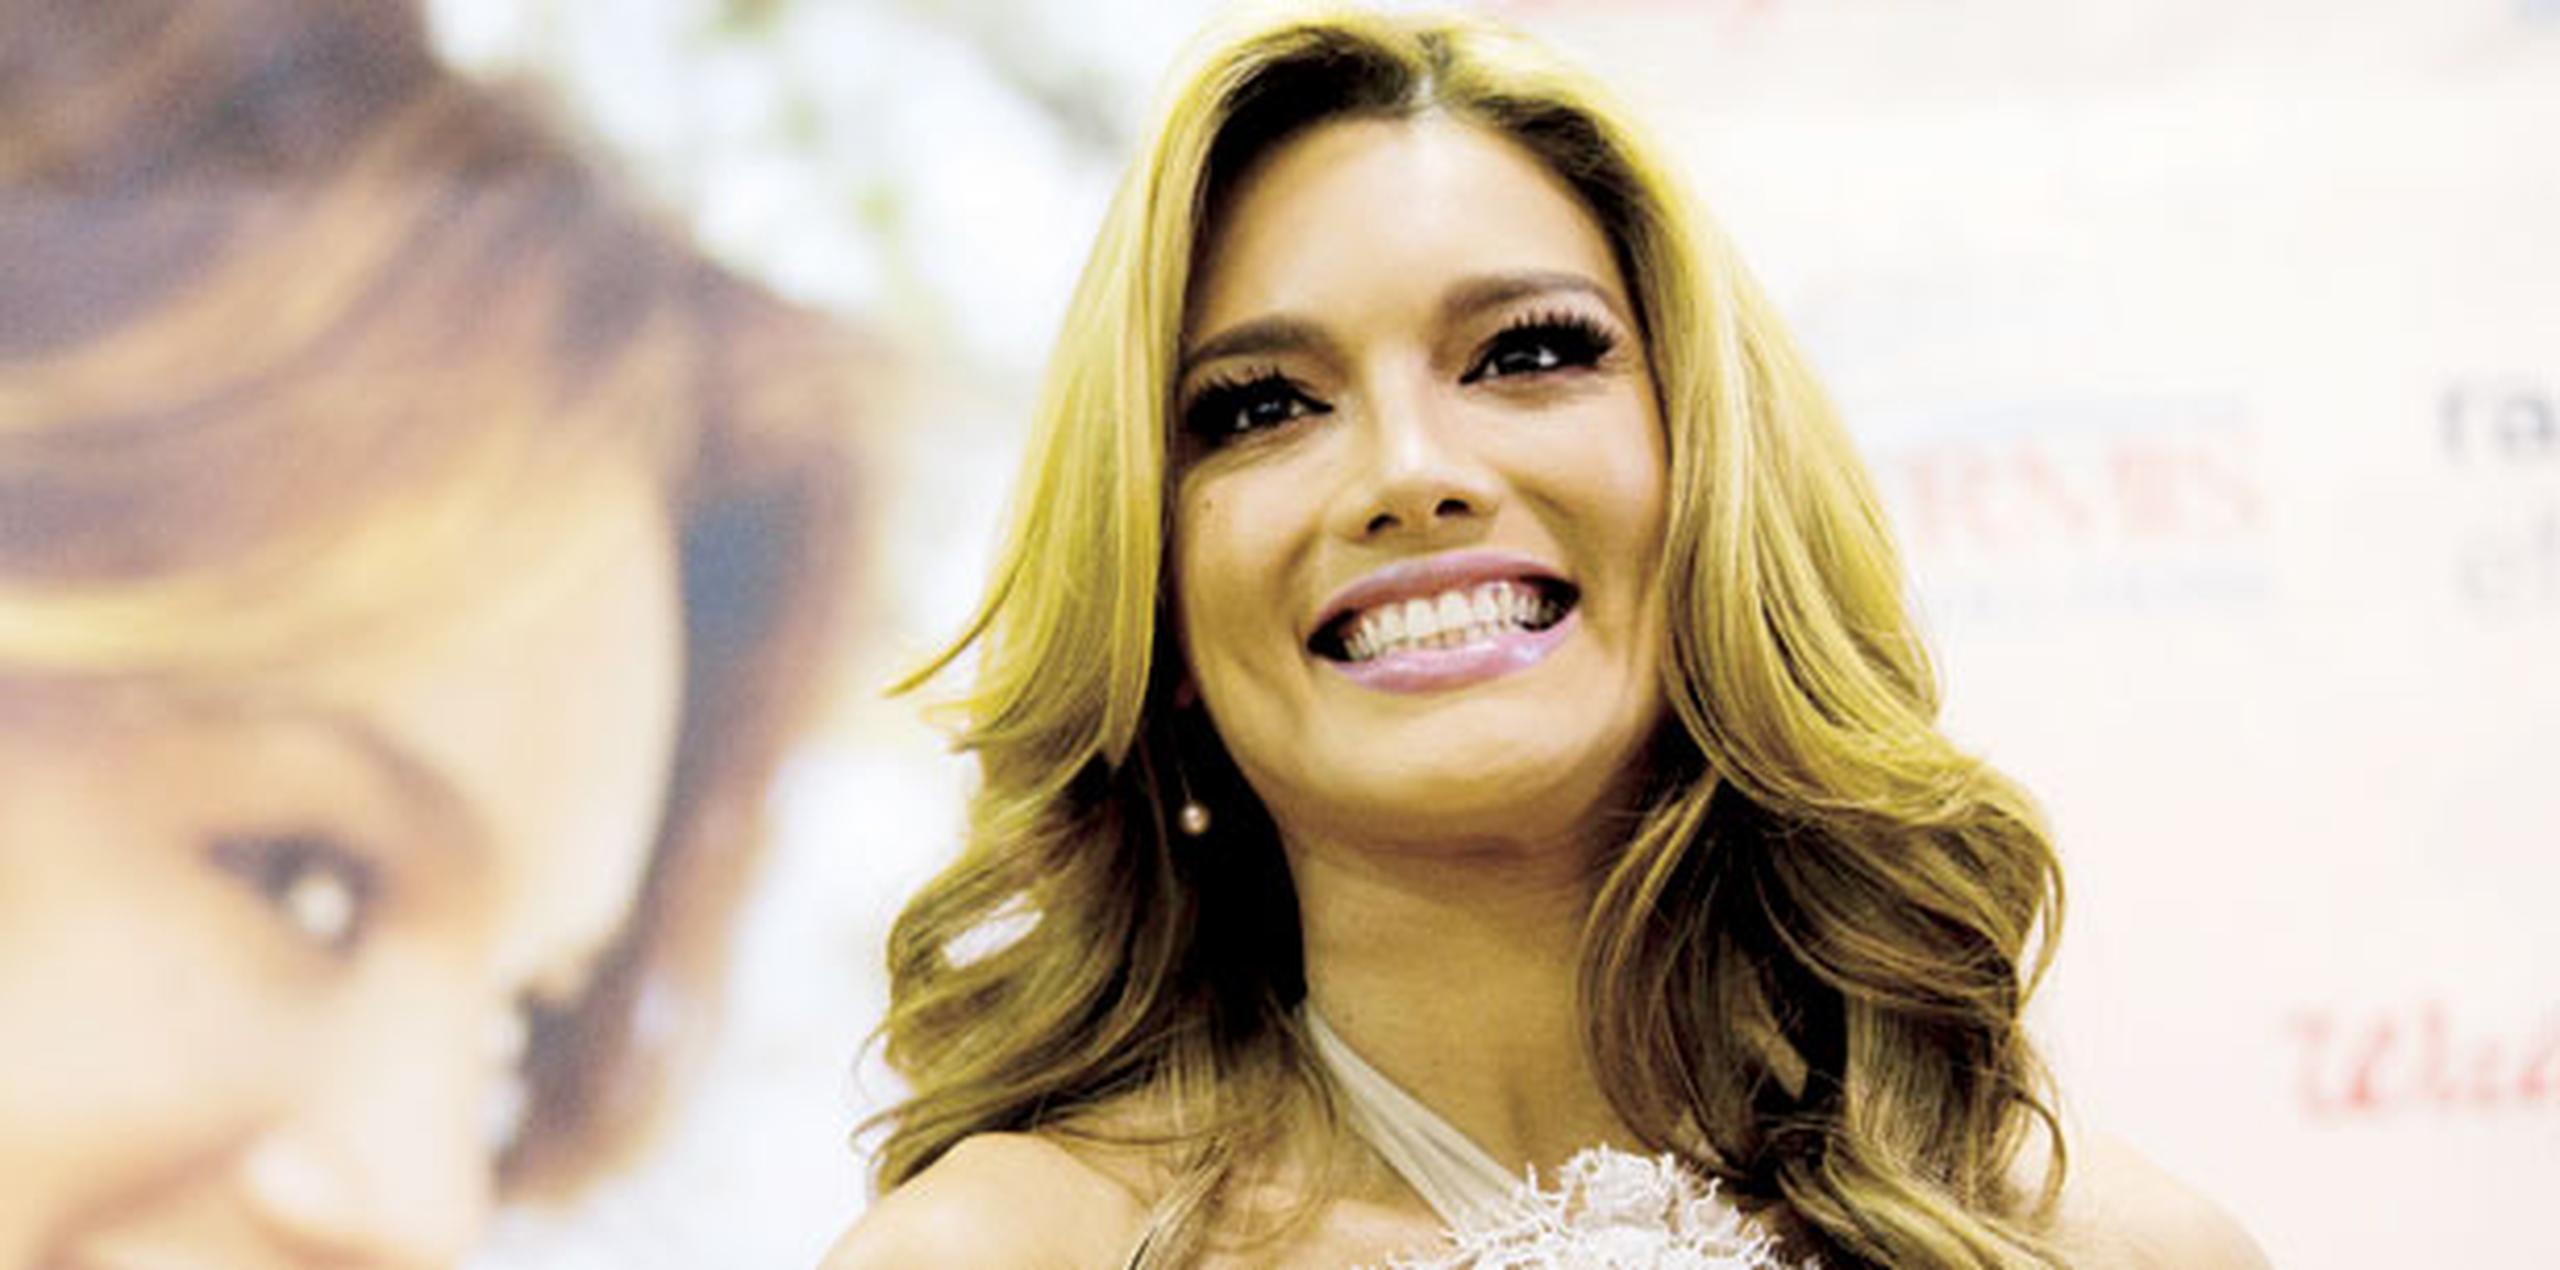 Se espera que la modelo, quien este año celebra los 10 años de haber sido coronado como Miss Universo, esté presente en la ceremonia de corte de cinta de San Juan Moda que se llevará a cabo el 15 de abril. (Archivo)